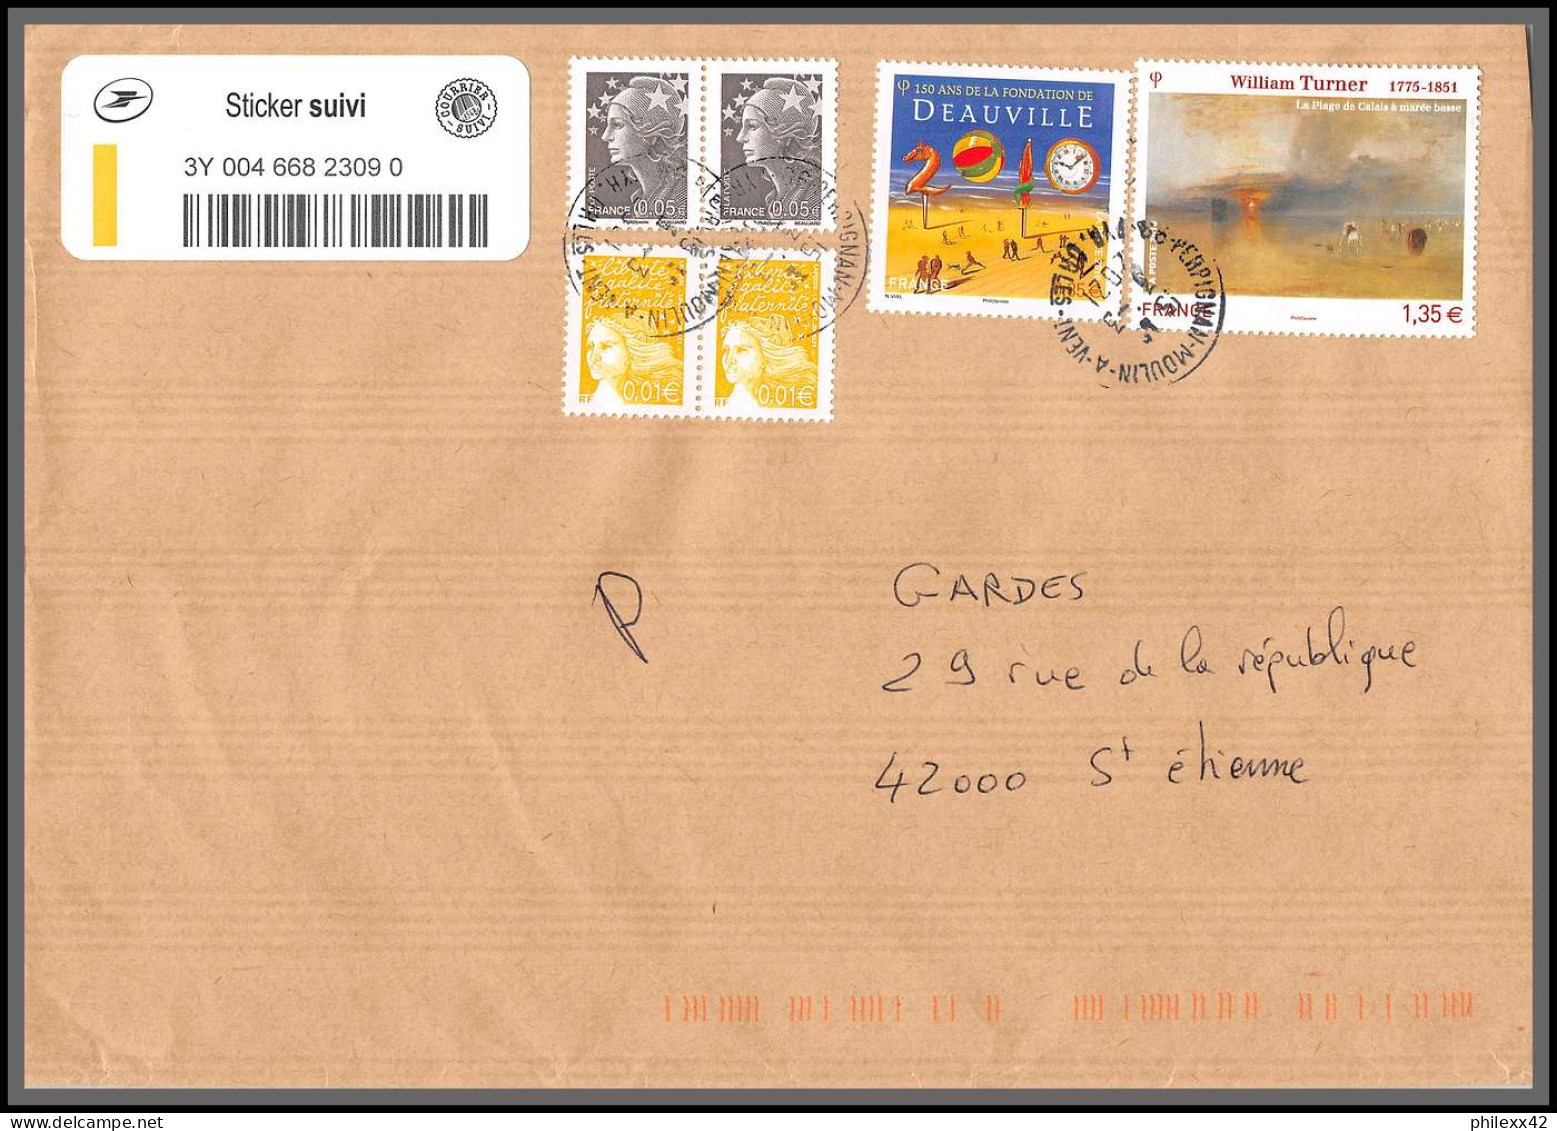 95883 - lot de 13 courriers lettres enveloppes de l'année 2020 divers affranchissements en EUROS